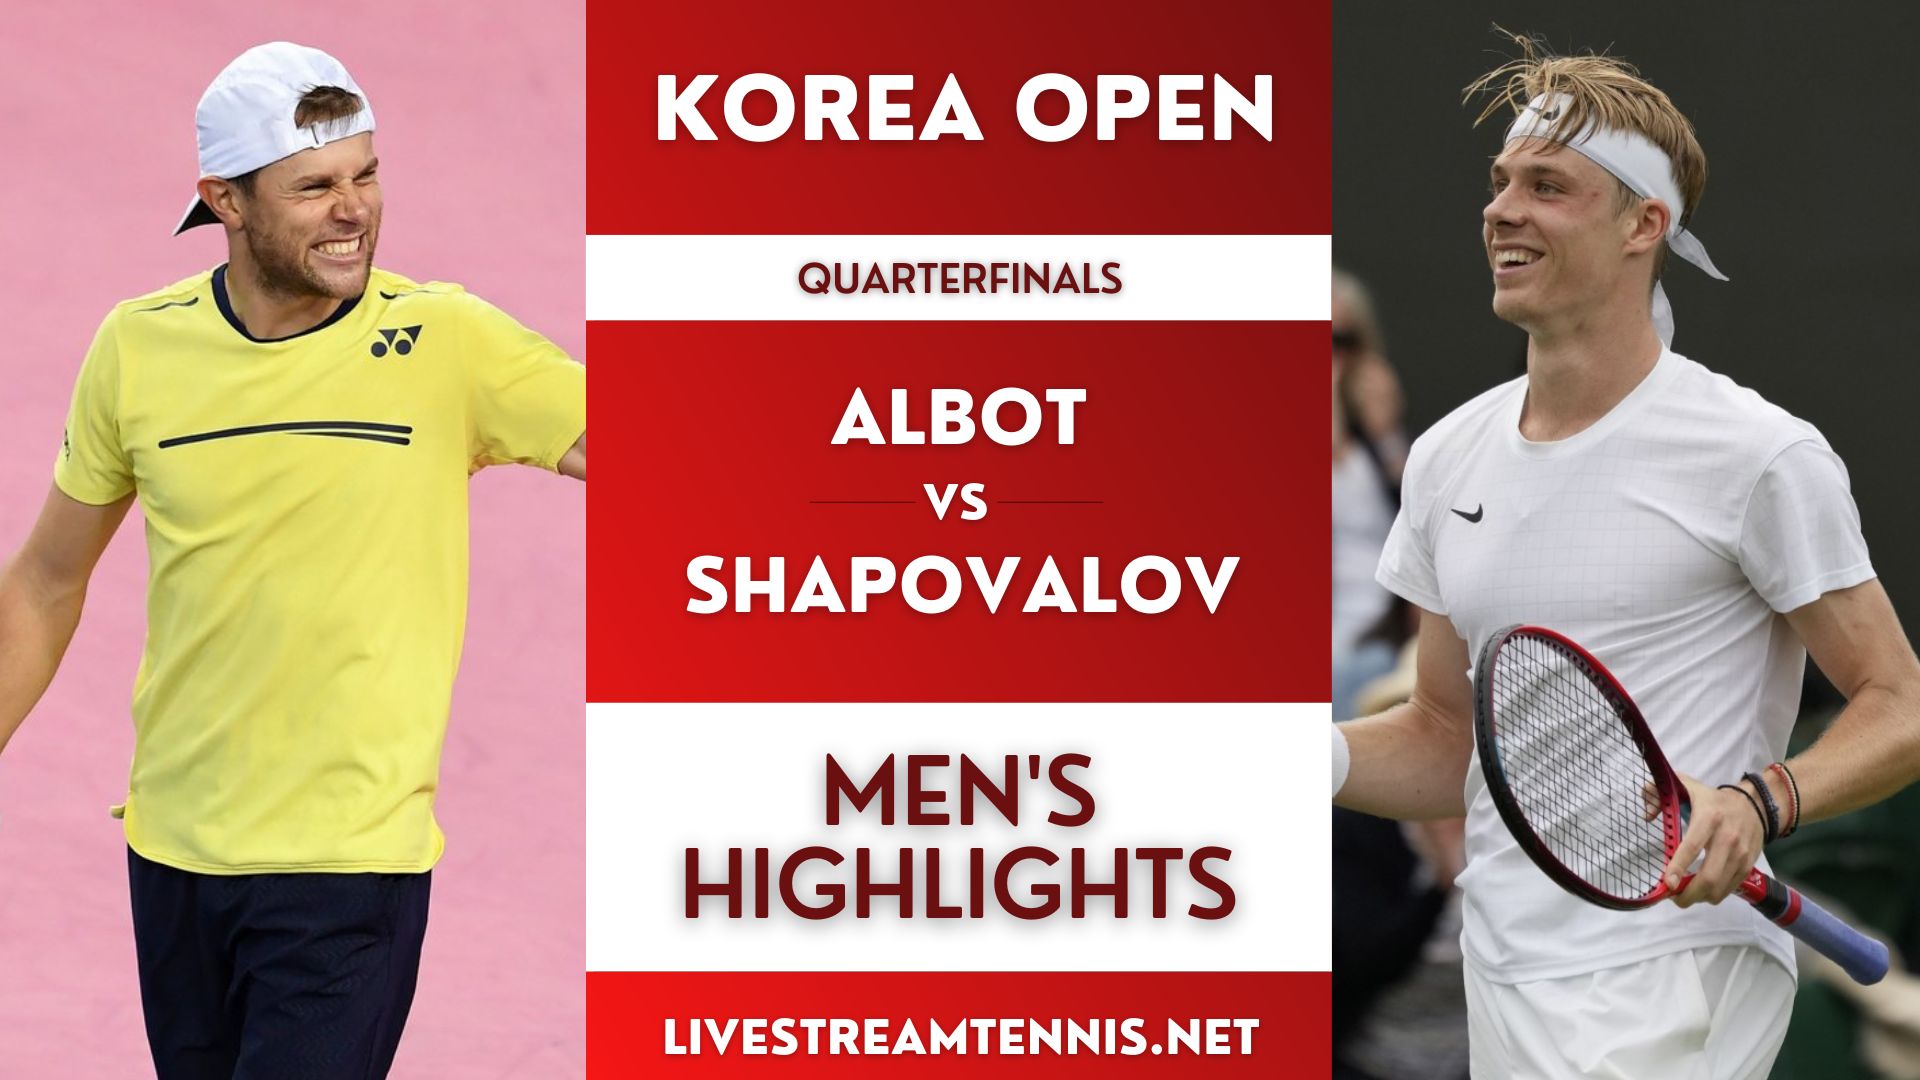 Korea Open Men Quarterfinal 3 Highlights 2022